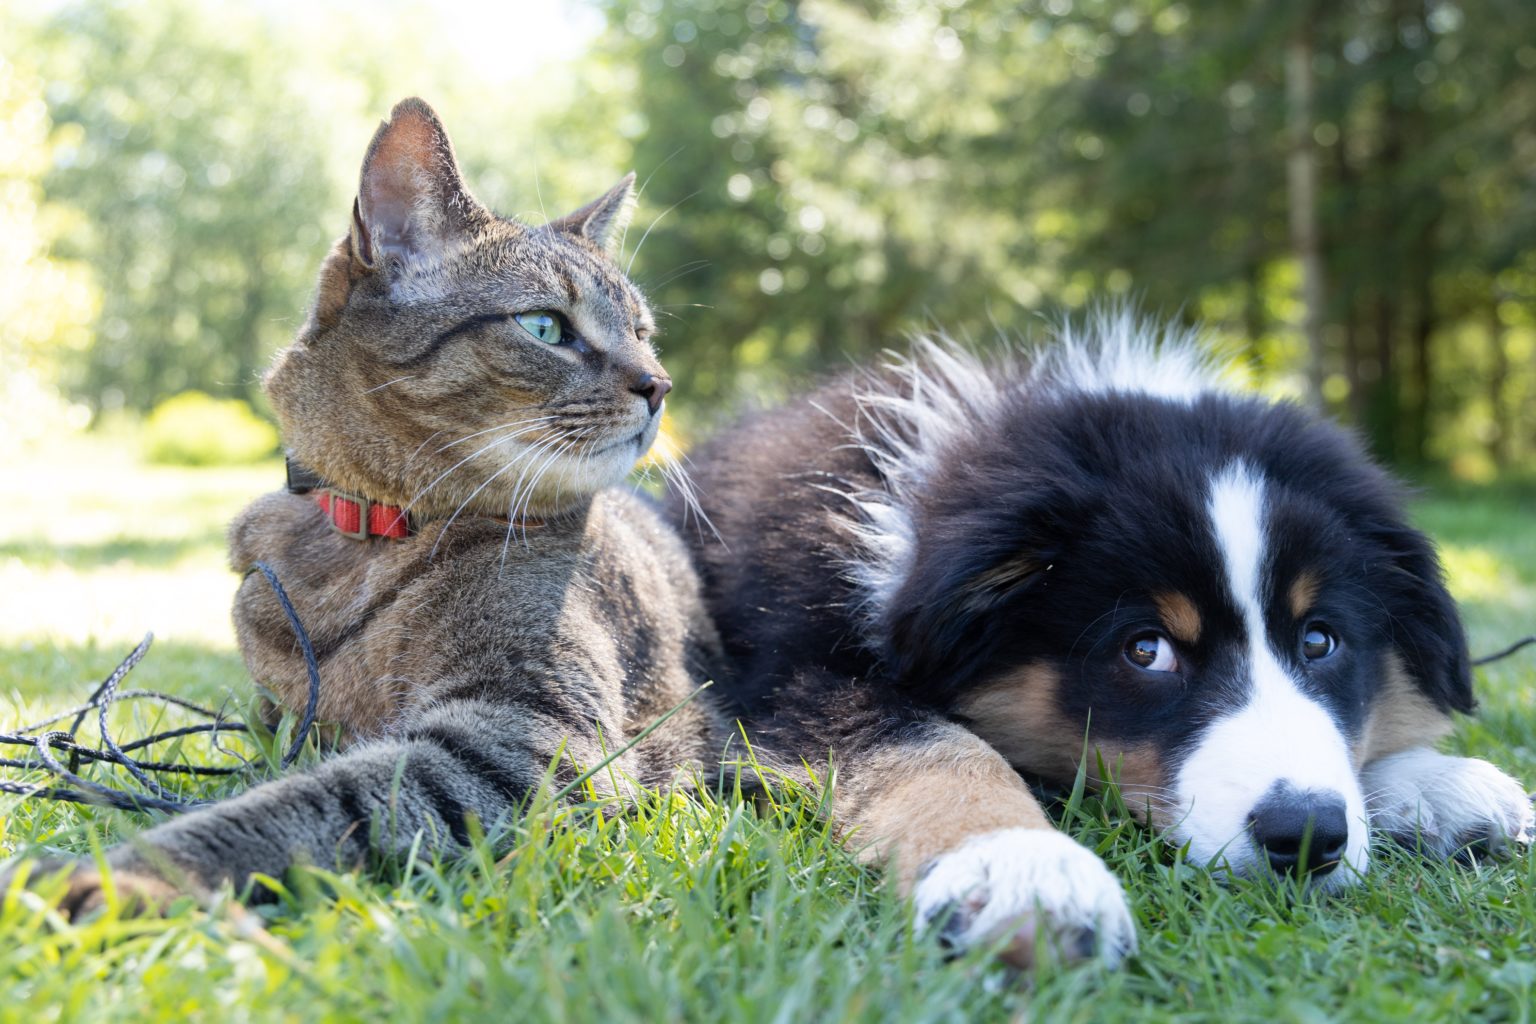 Un chien bouvier bernois allongé par terre qui regarde un chat allongé à coté de lui dans l'herbe